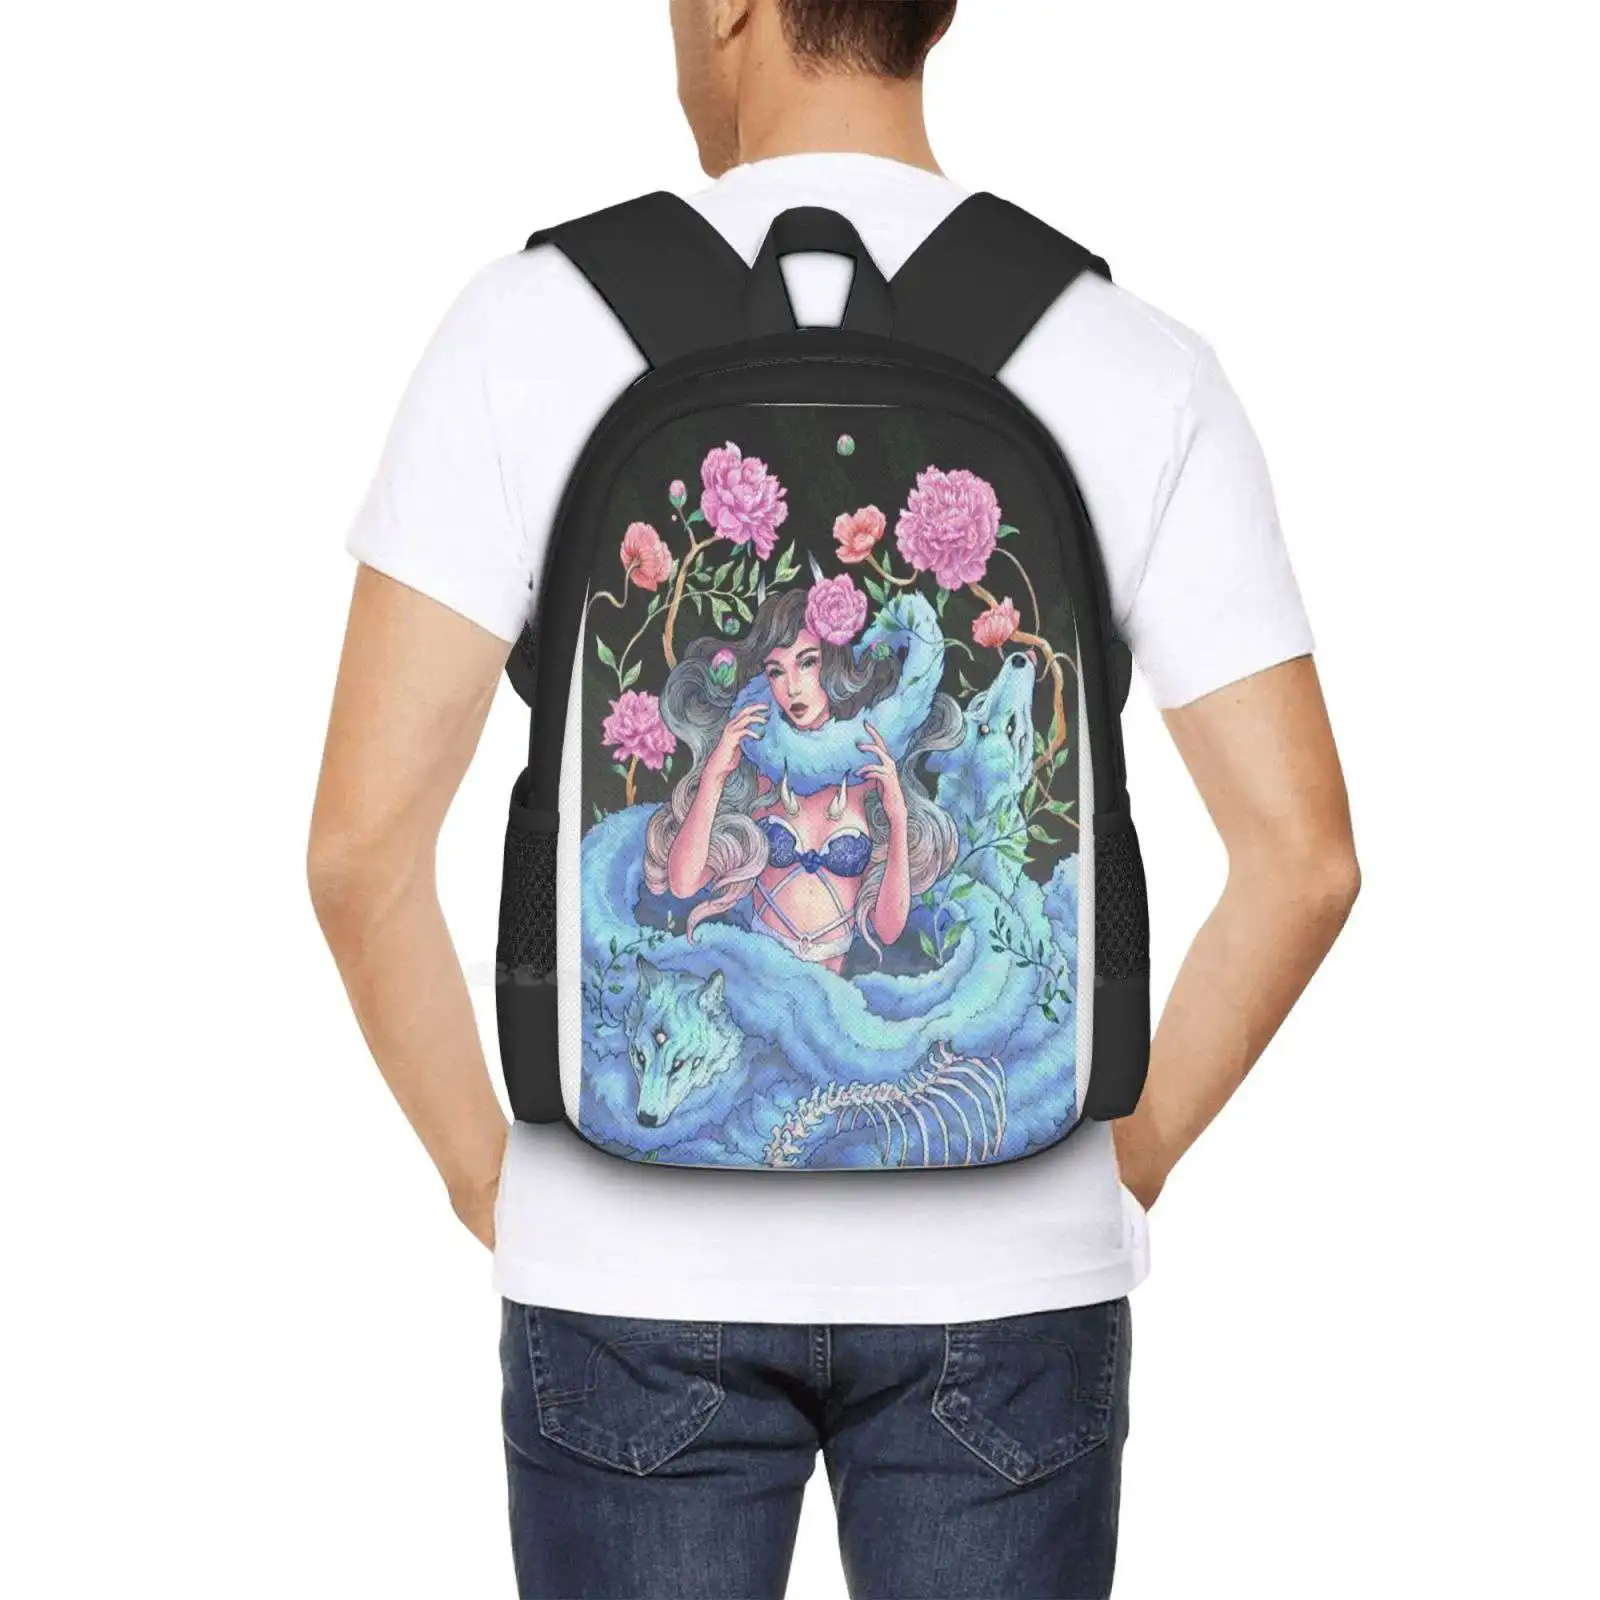 Рюкзак для школьника, ноутбук, дорожная сумка, Волчья стая, Змея, Колдовство, Природа, Цветок, Пионы, Маки, Мех